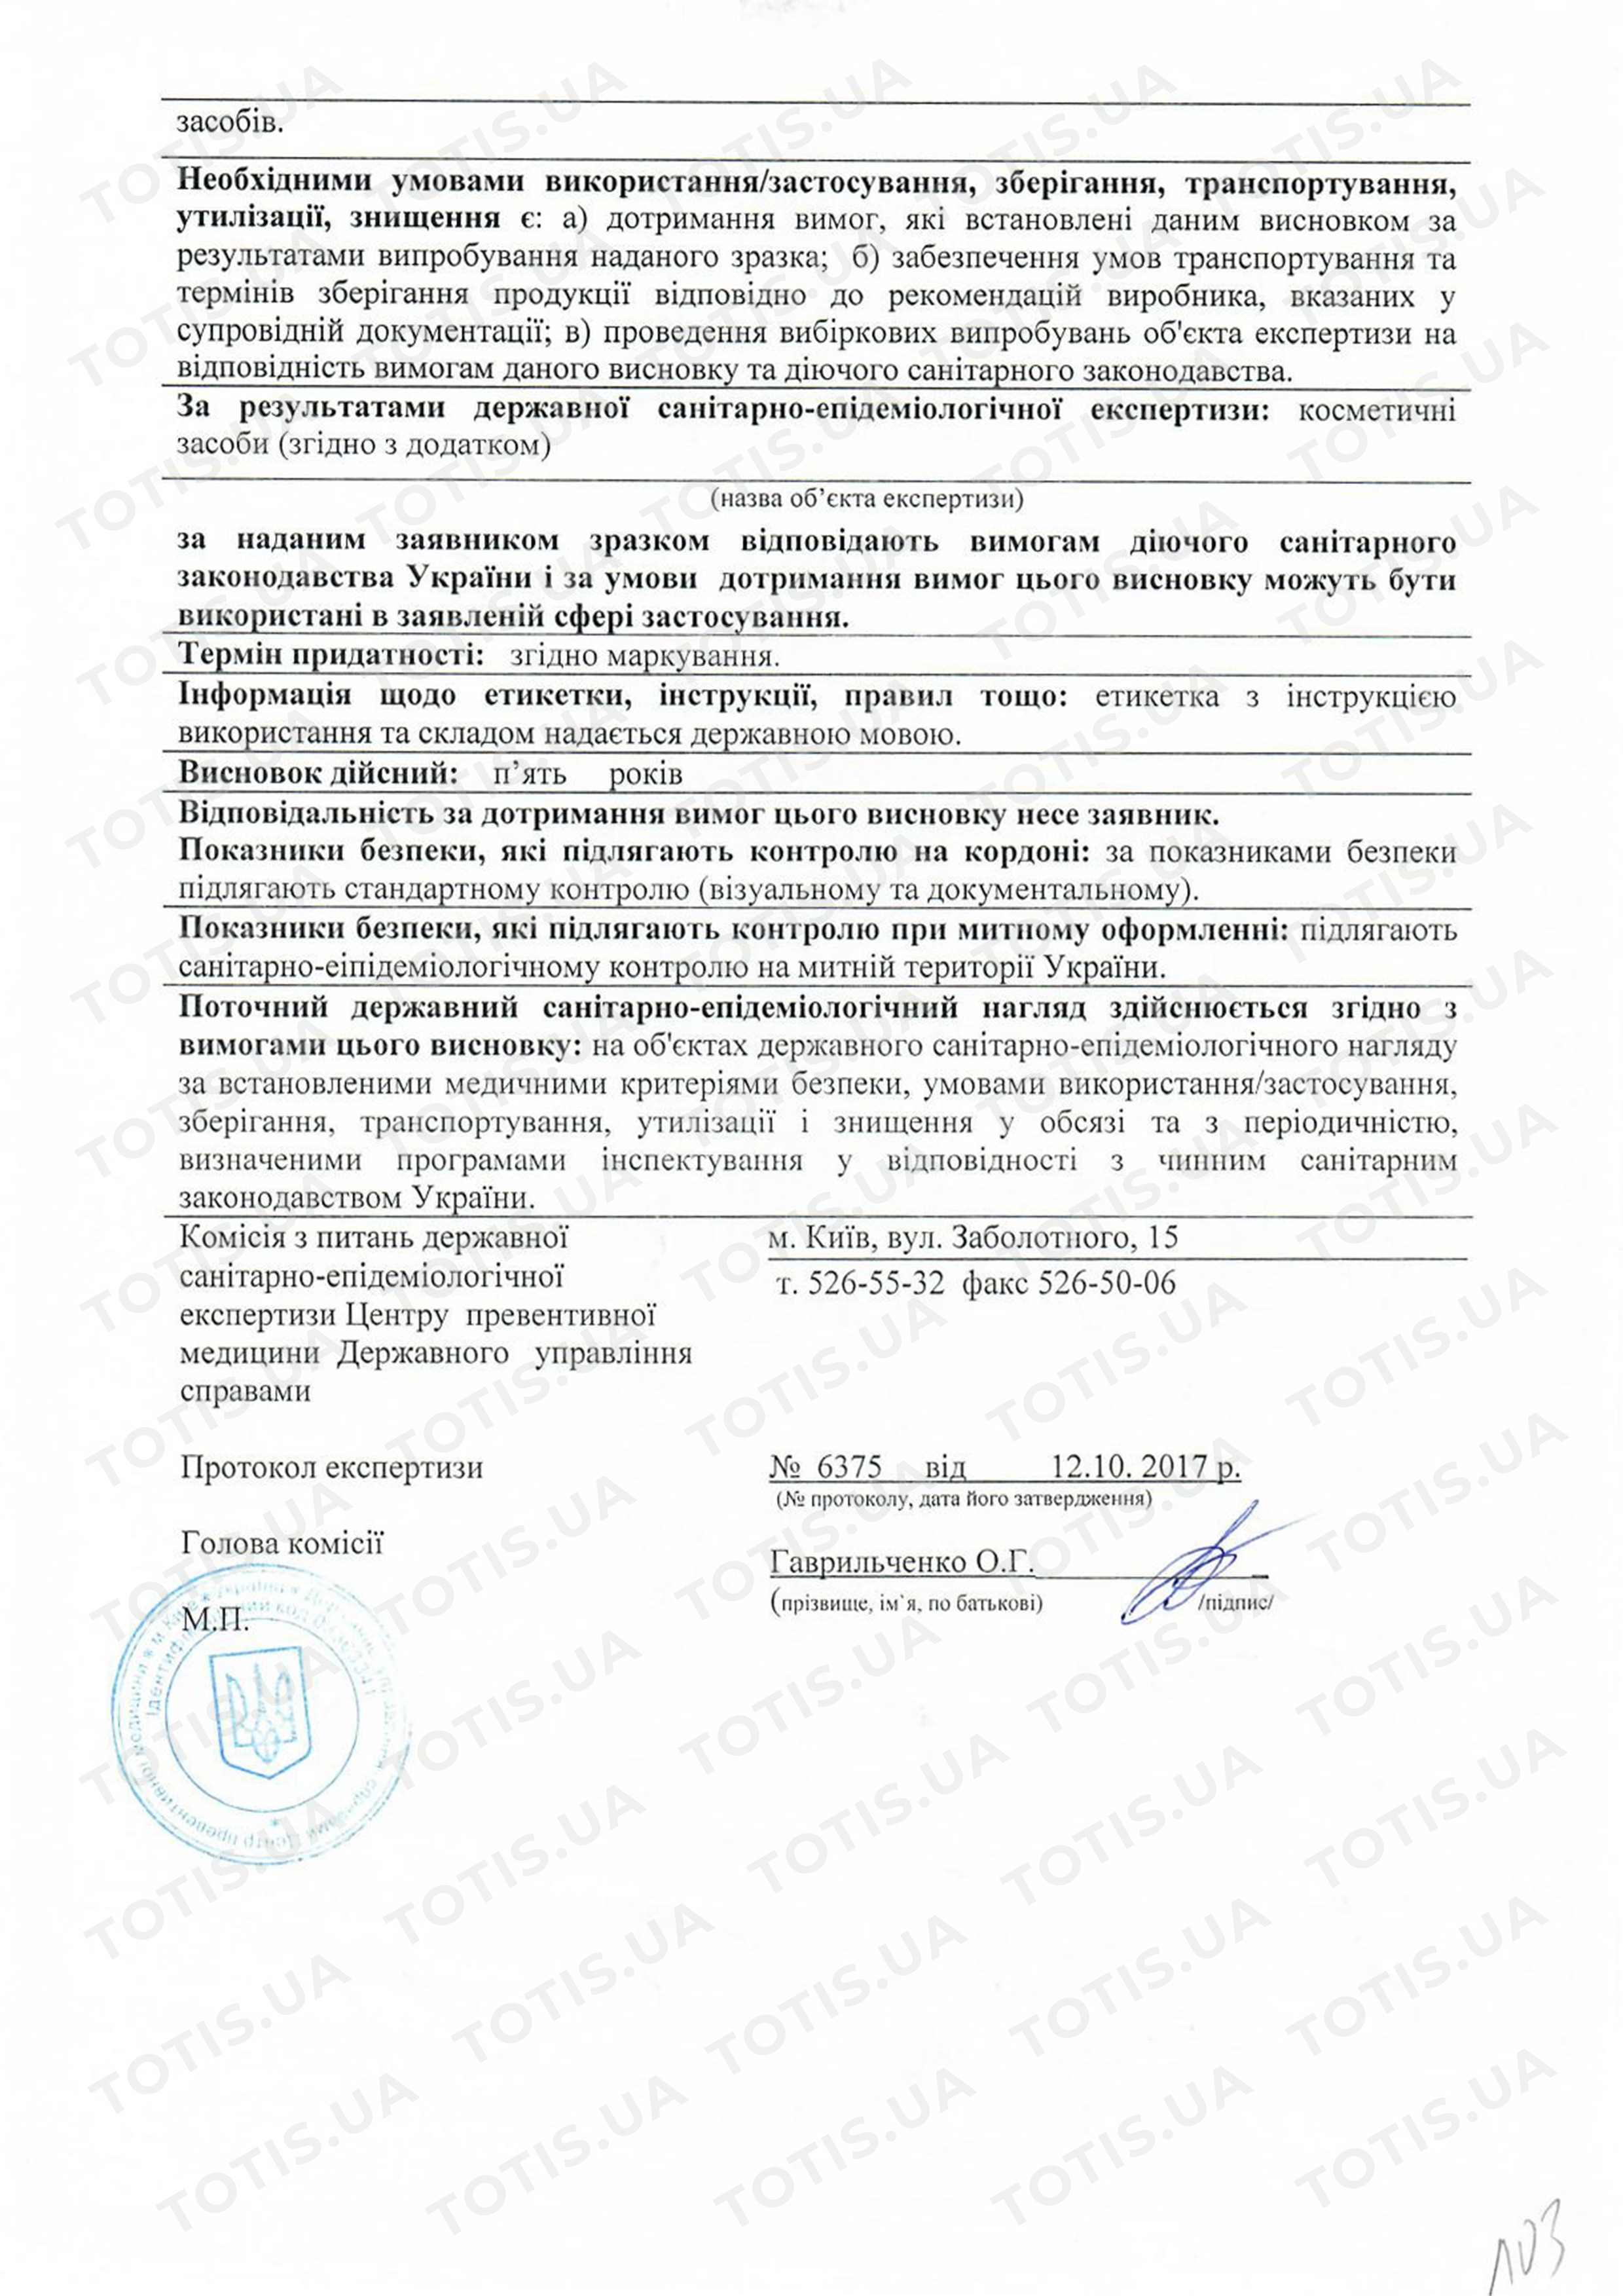 сертификат косметических средств dr spiller